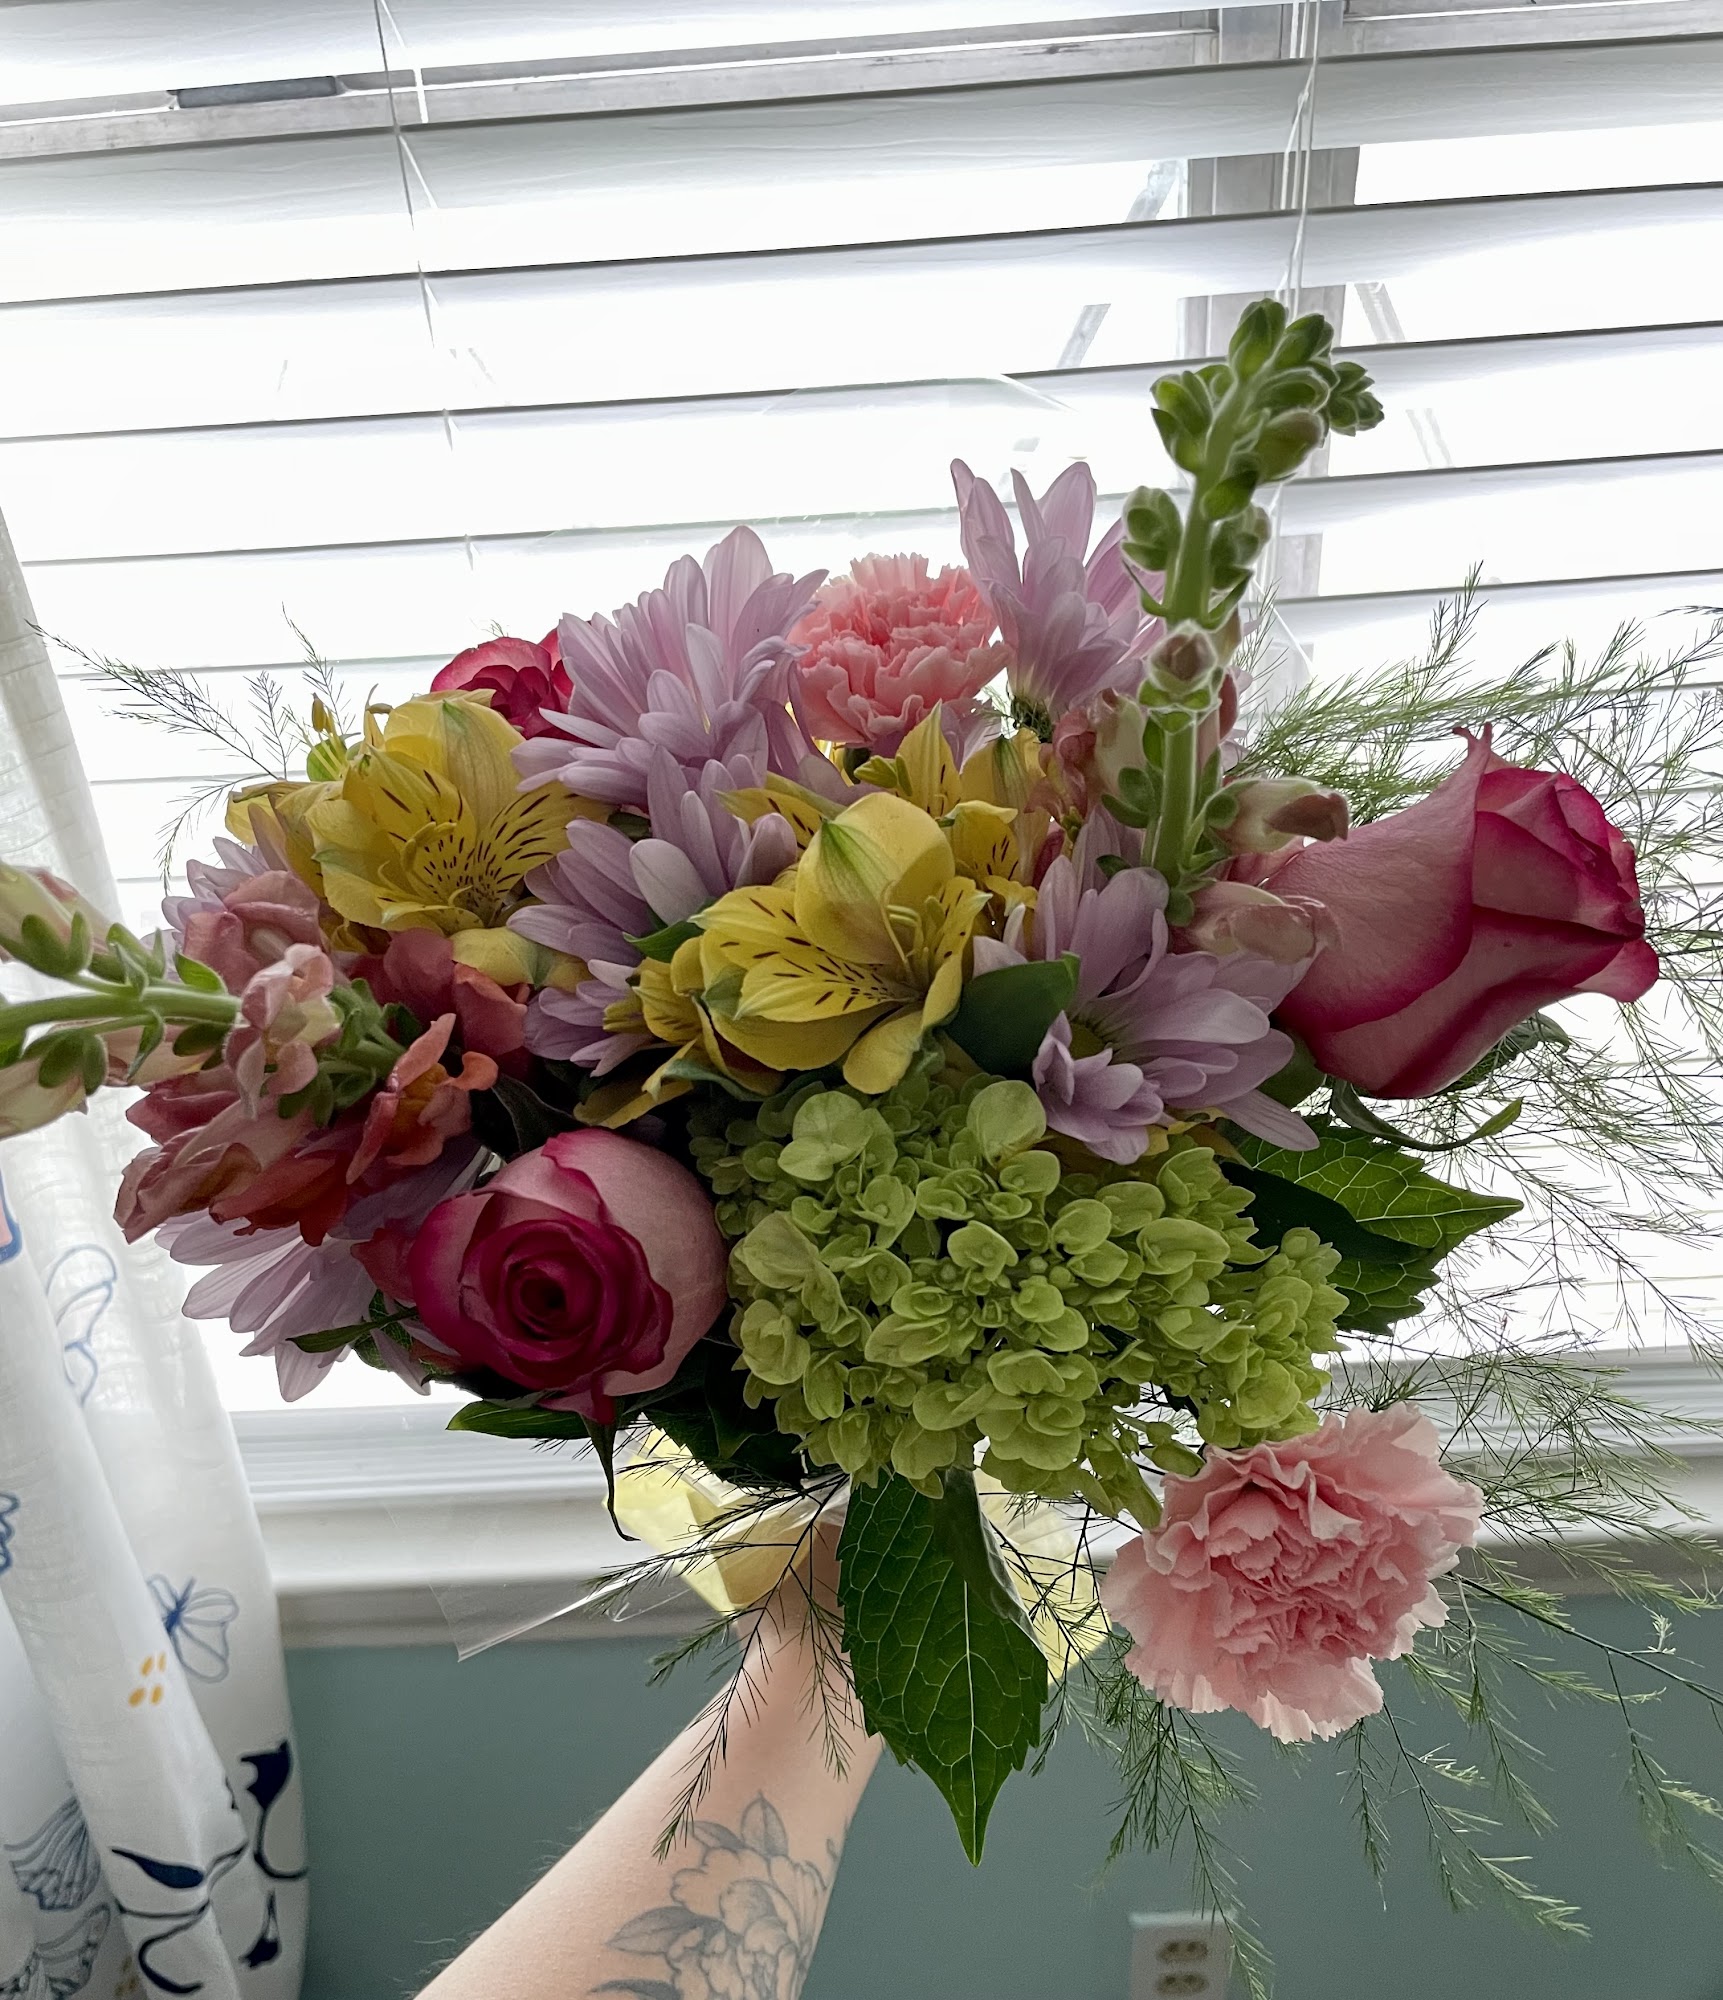 Martha's Florals